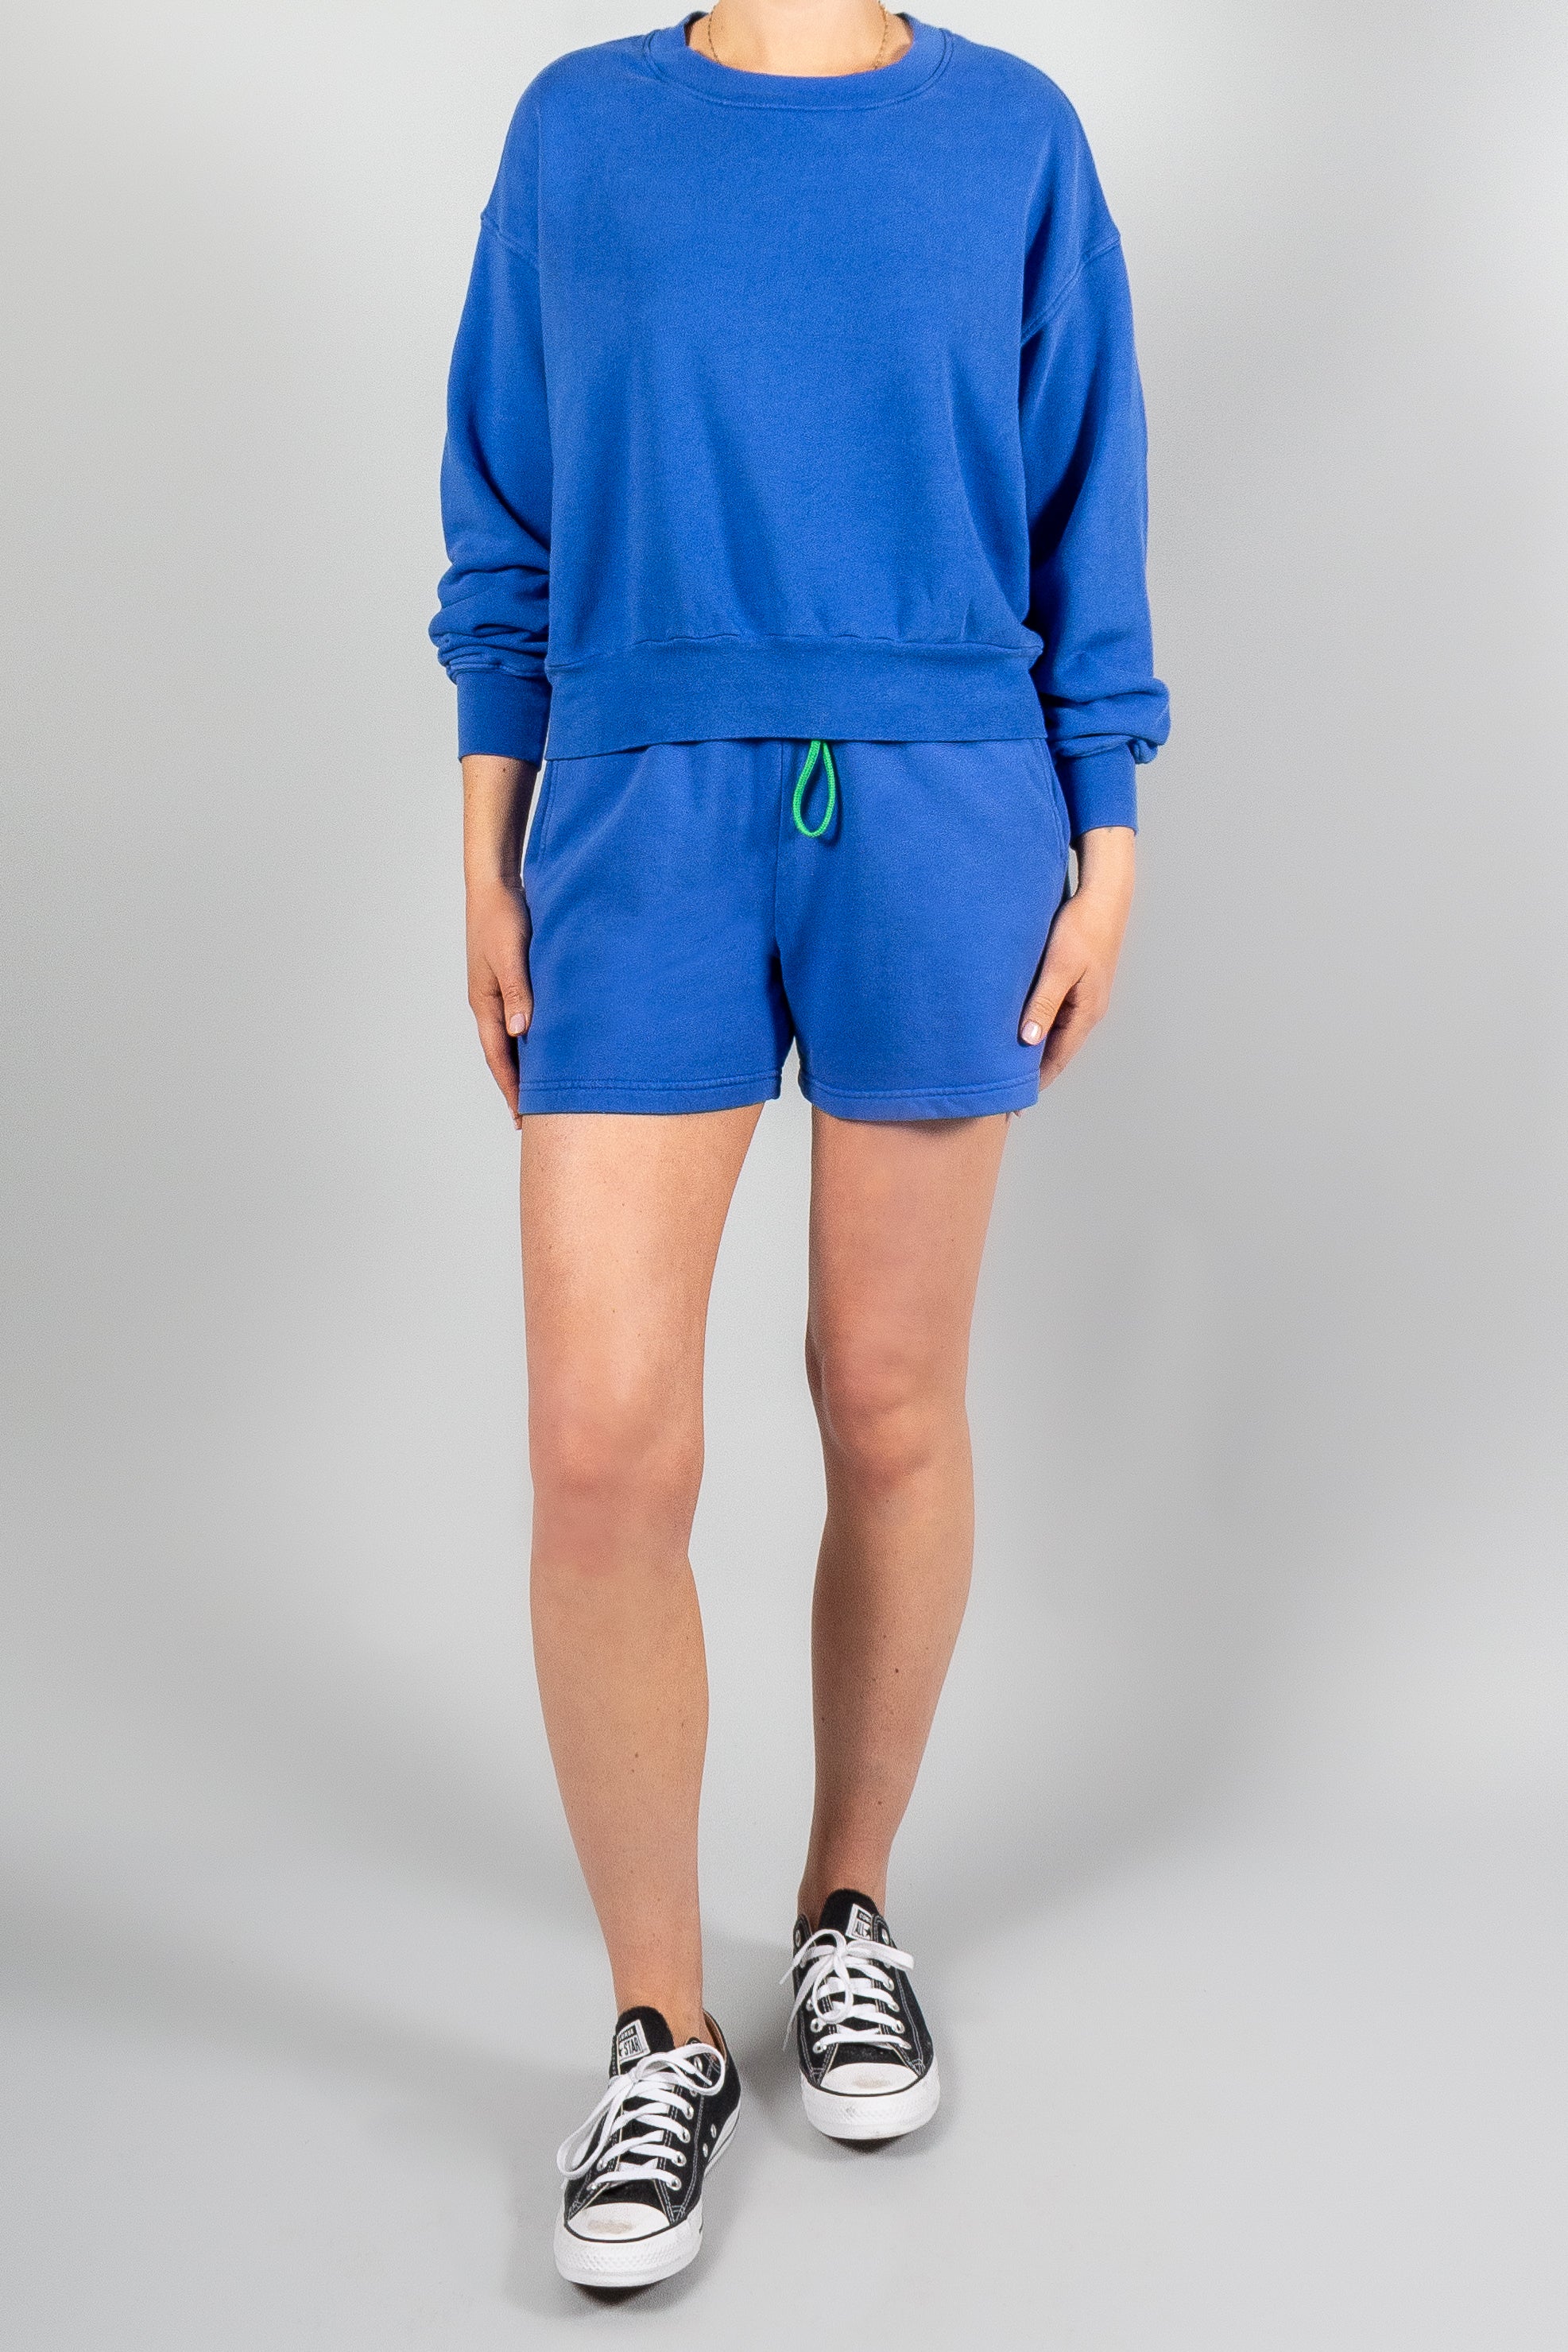 Xirena Huxley Sweatshirt-Tops-Misch-Boutique-Vancouver-Canada-misch.ca